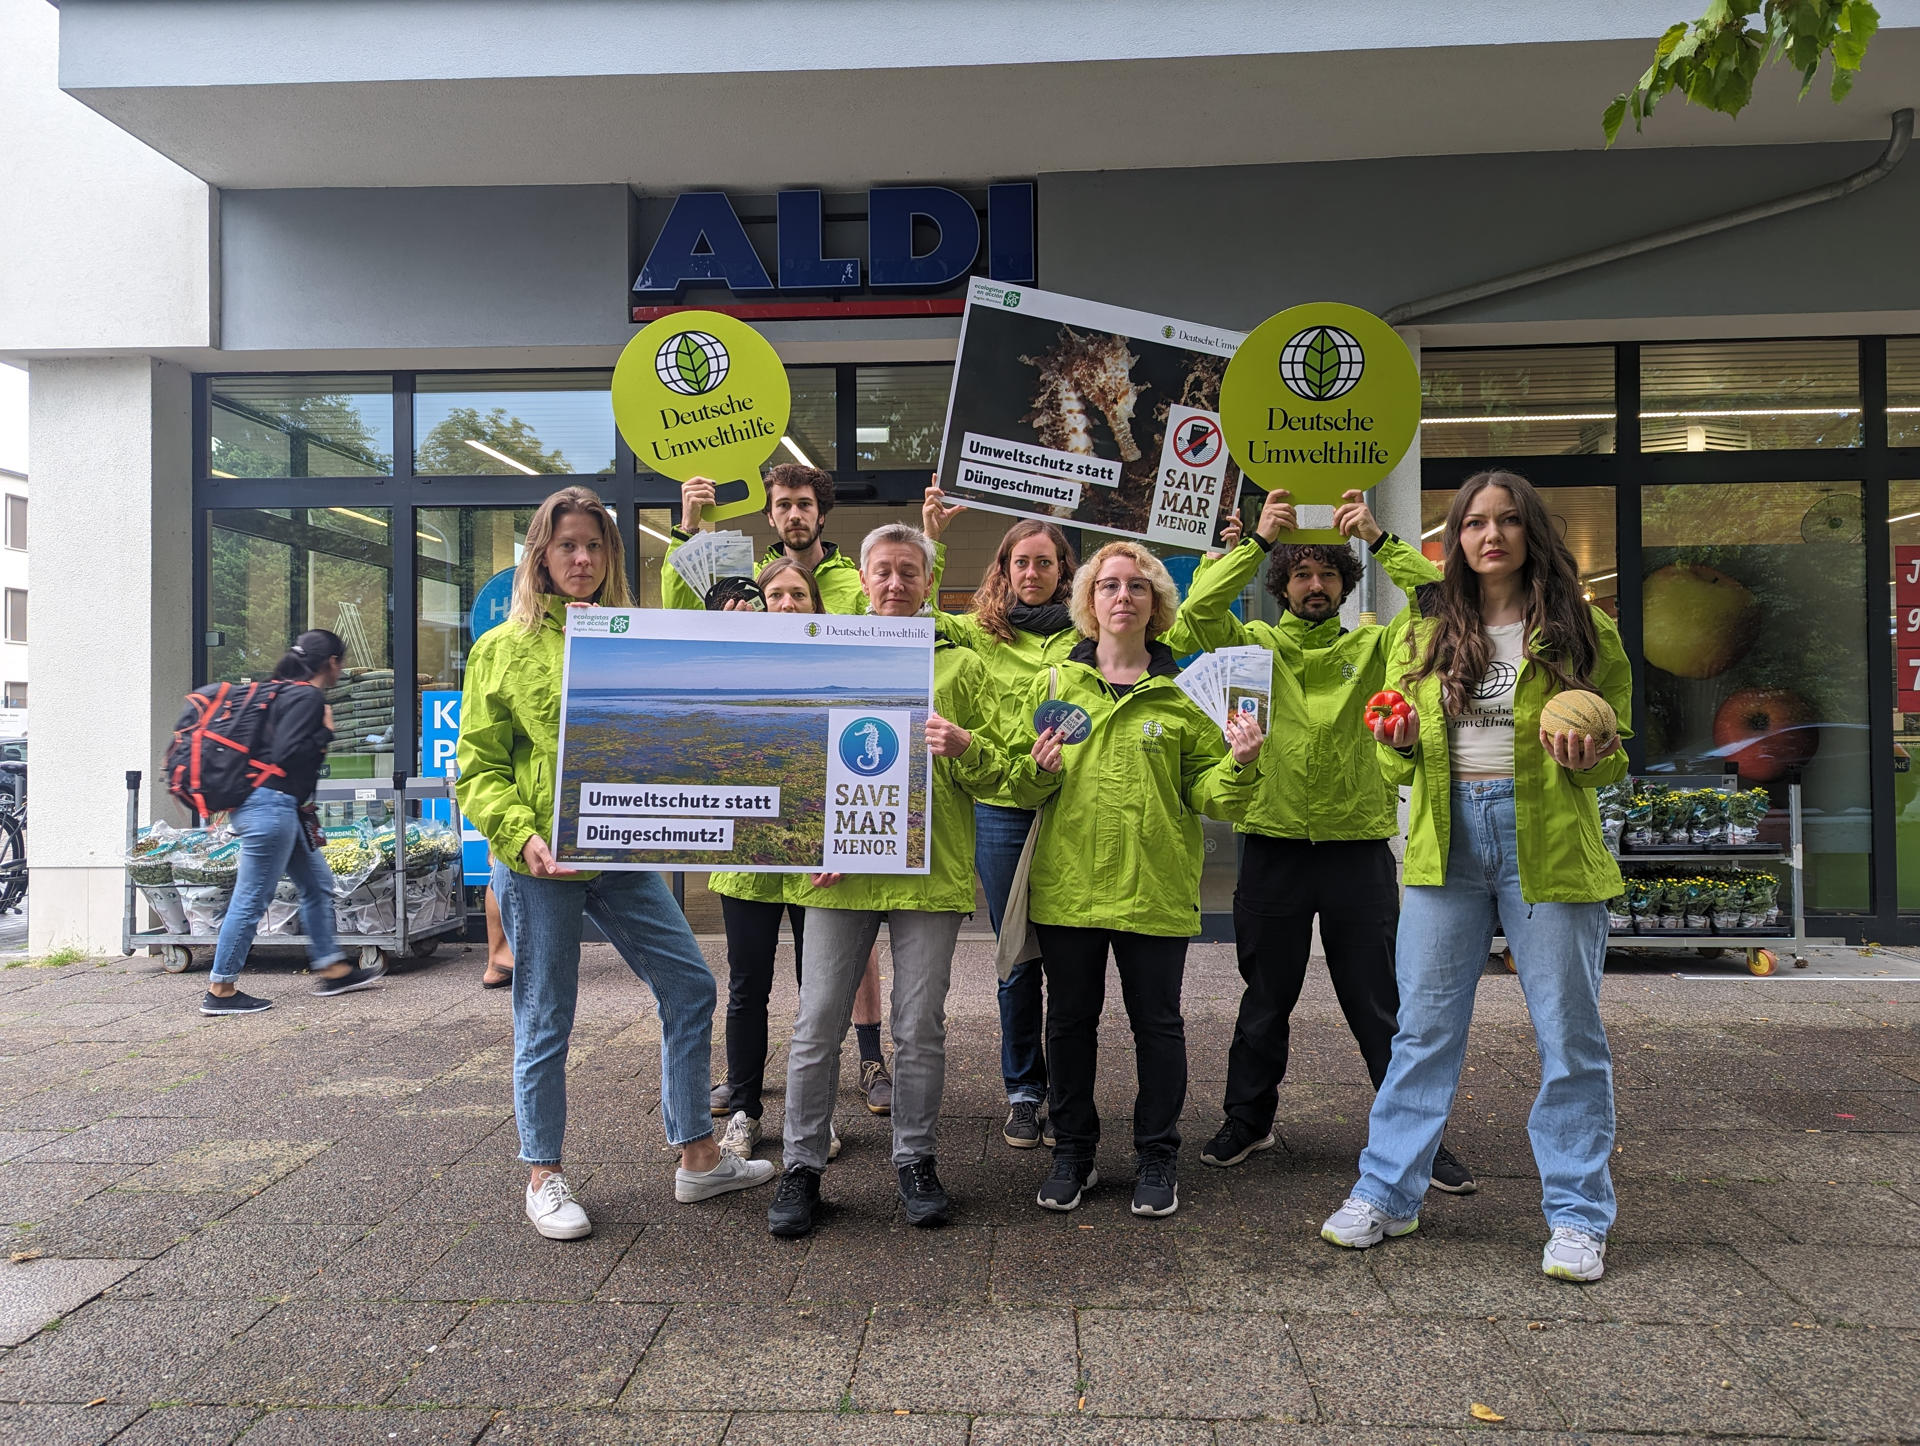 Protesta que los activistas de la organización ecologista alemana Deutsche Umwelthilfe (DUH) han llevado a cabo este martes frente a un supermercado en Berlín. . EFE/DUH/SOLO USO EDITORIAL/SOLO DISPONIBLE PARA ILUSTRAR LA NOTICIA QUE ACOMPAÑA (CRÉDITO OBLIGATORIO)